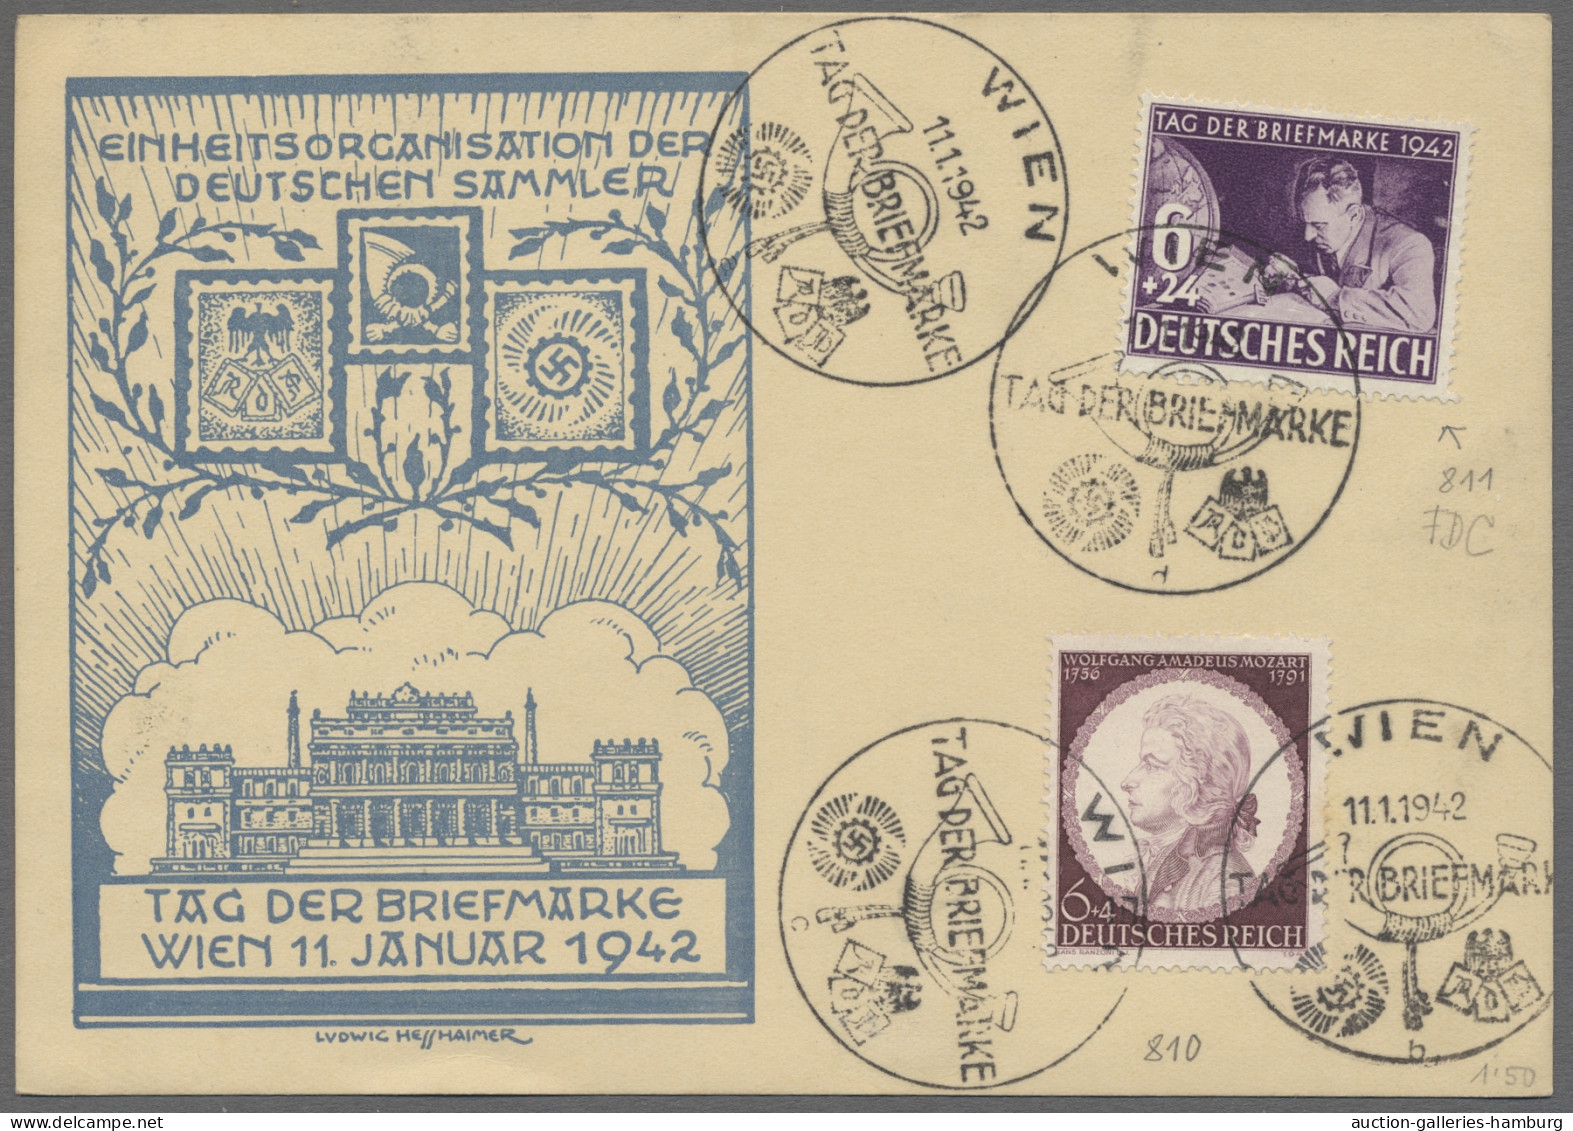 Deutsches Reich - 3. Reich: 1942, Tag der Briefmarke, Sammlung von 96 Belegen au